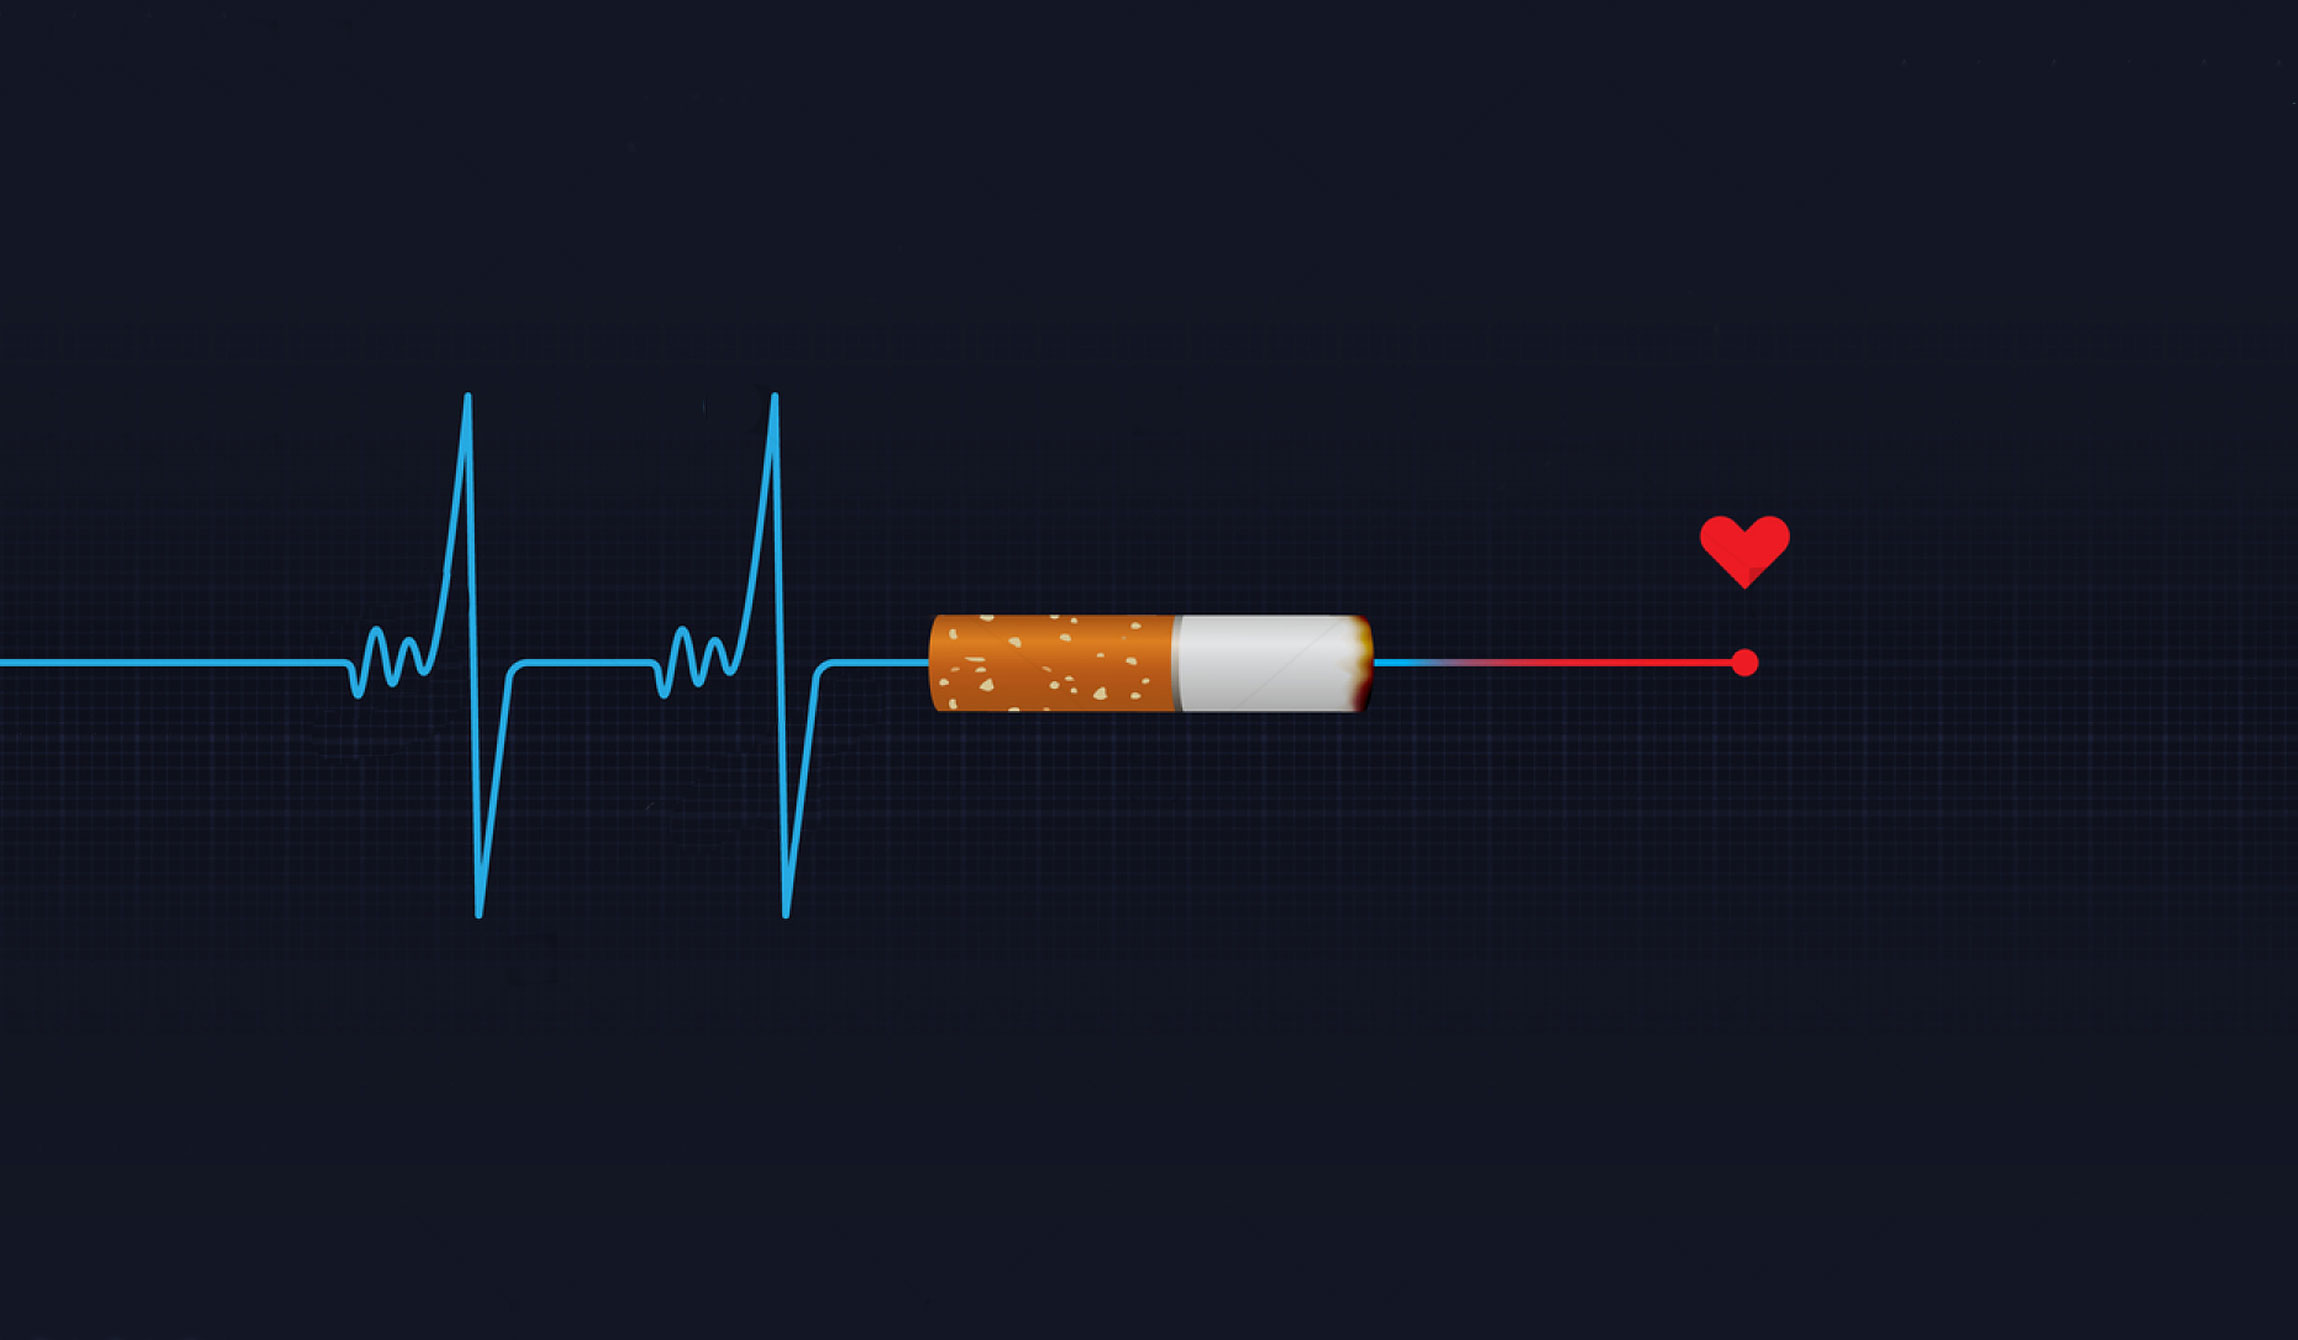 Как бросить курить?